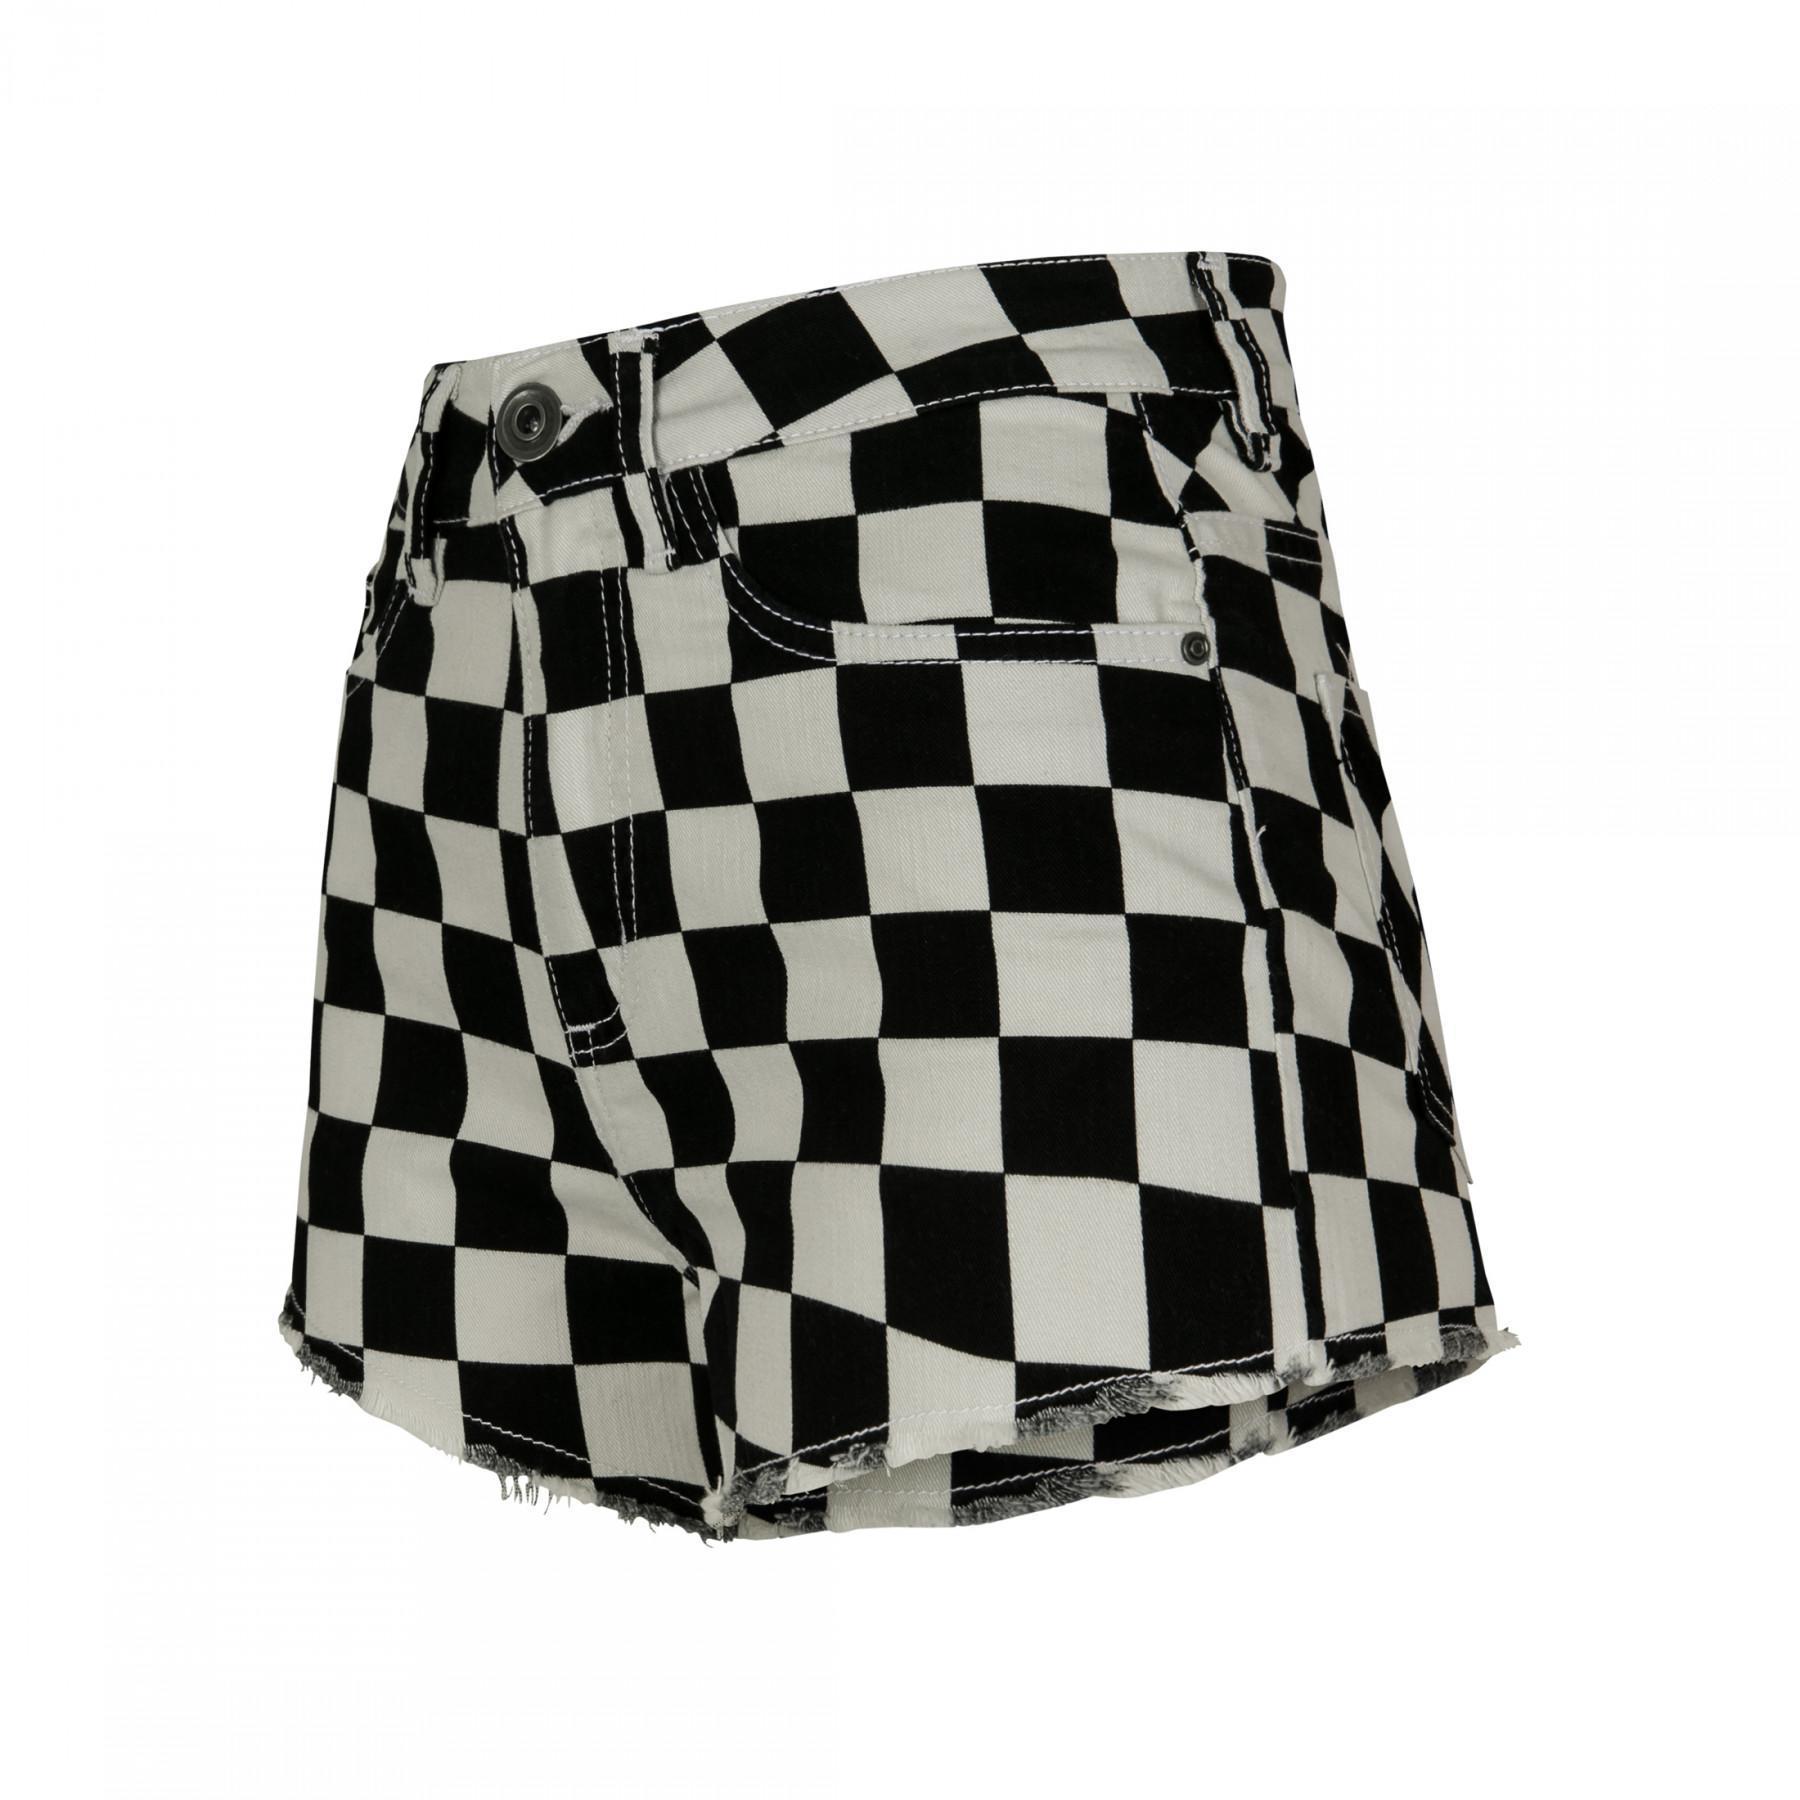 Hot shorts i urban classic twill för damer